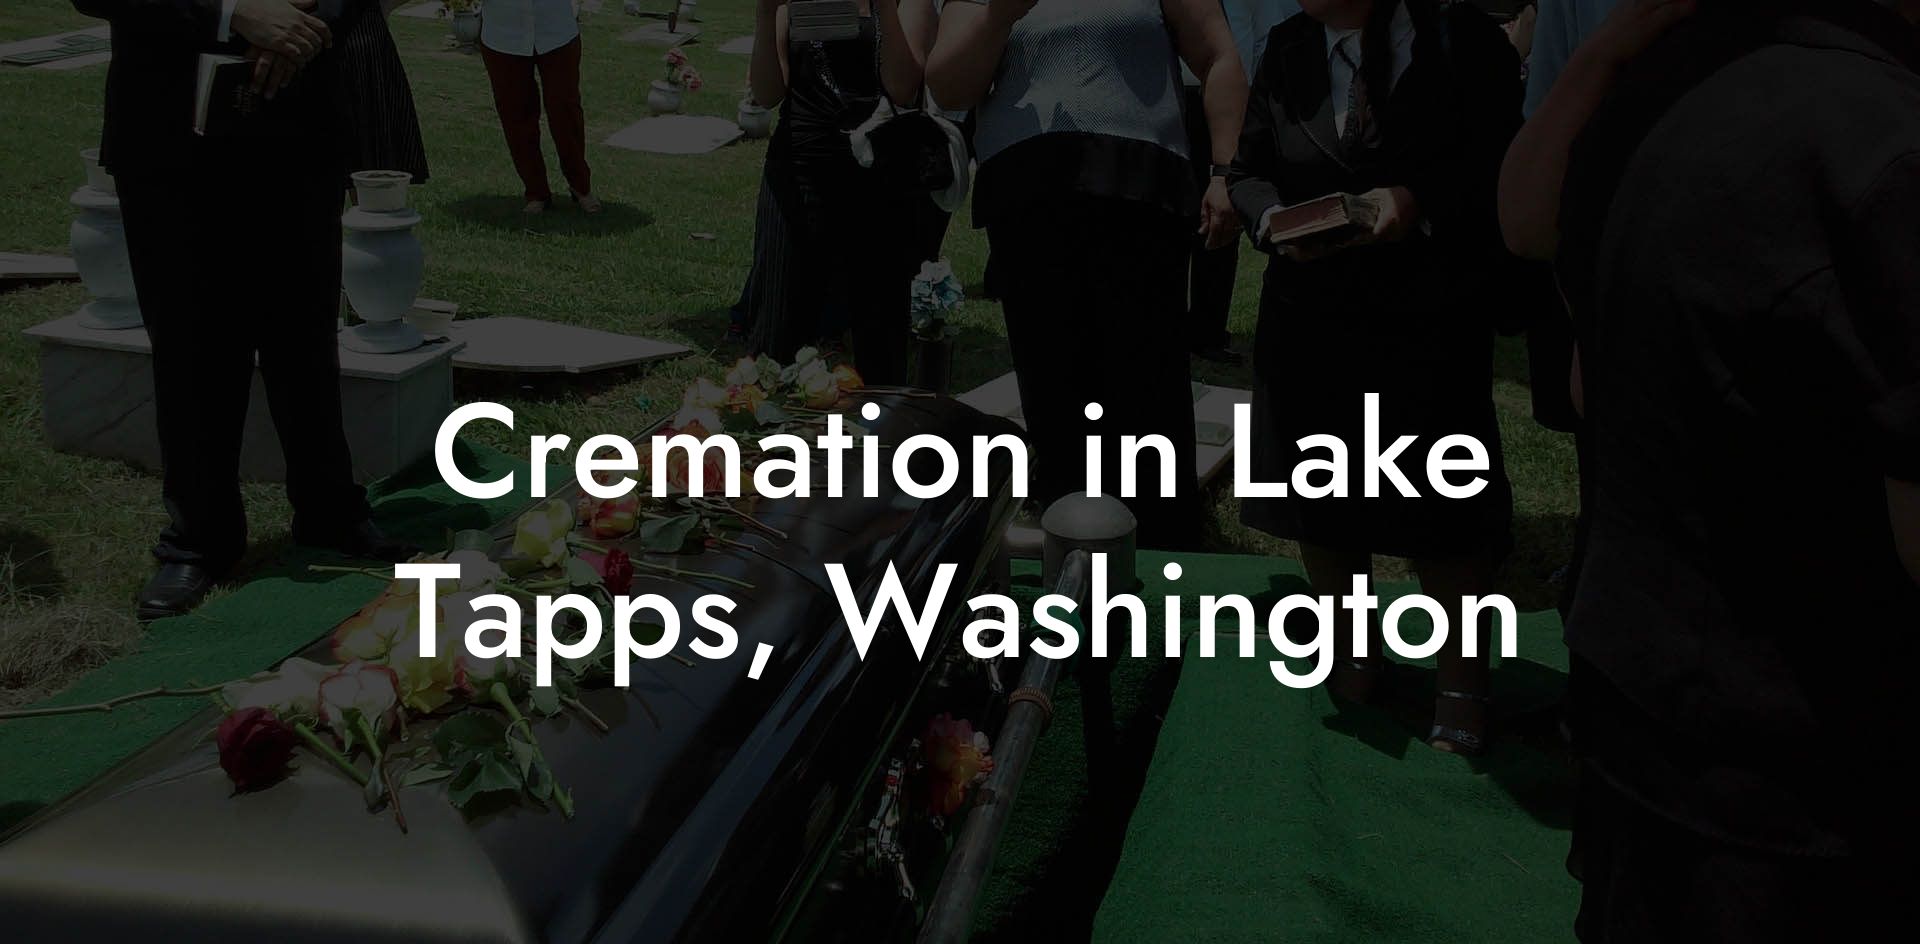 Cremation in Lake Tapps, Washington